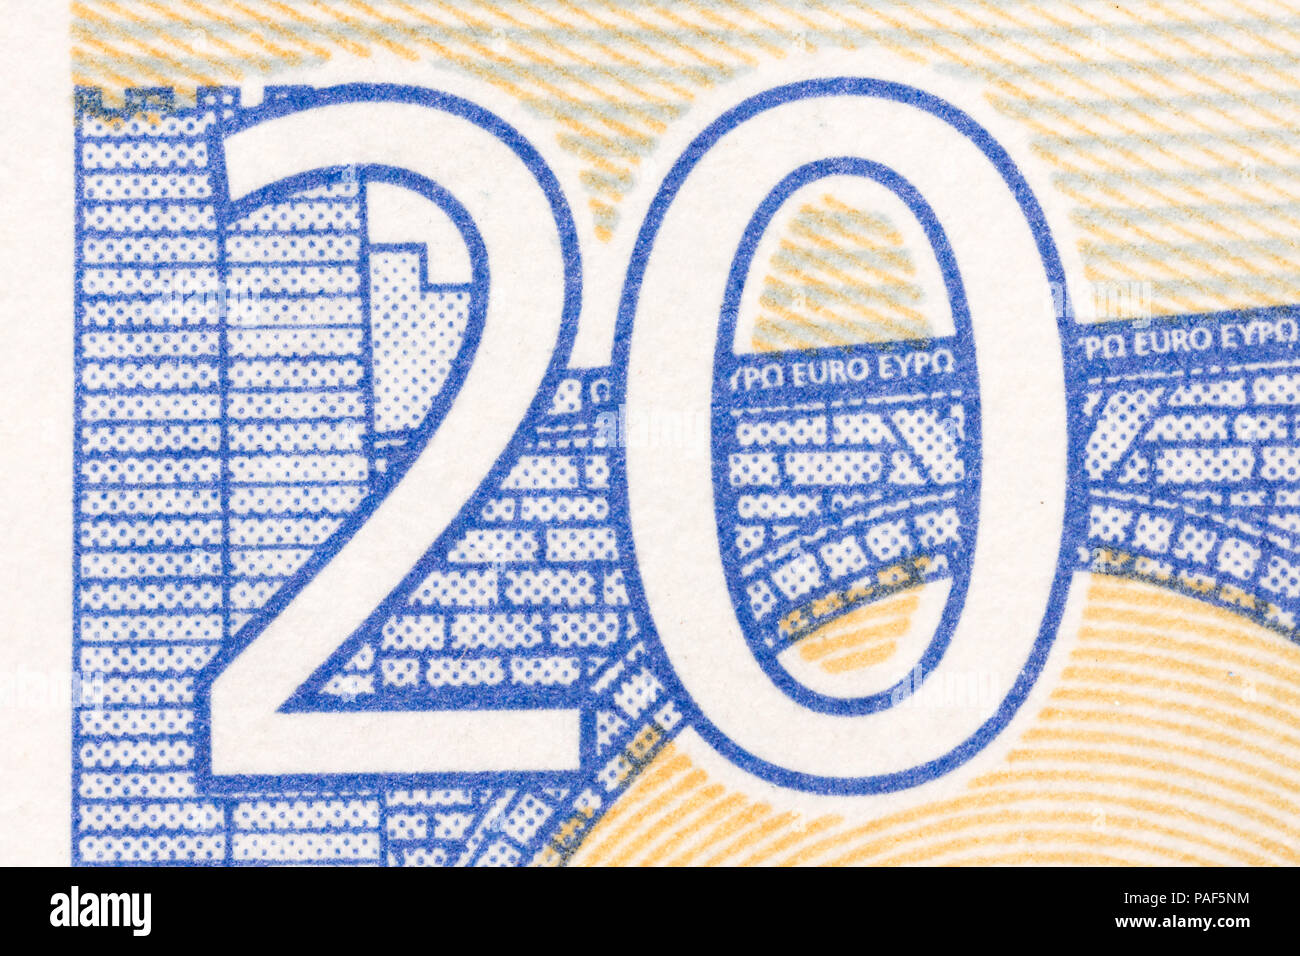 Veinte euros de la Unión Europea fotografiado de cerca. Focus Foto de stock